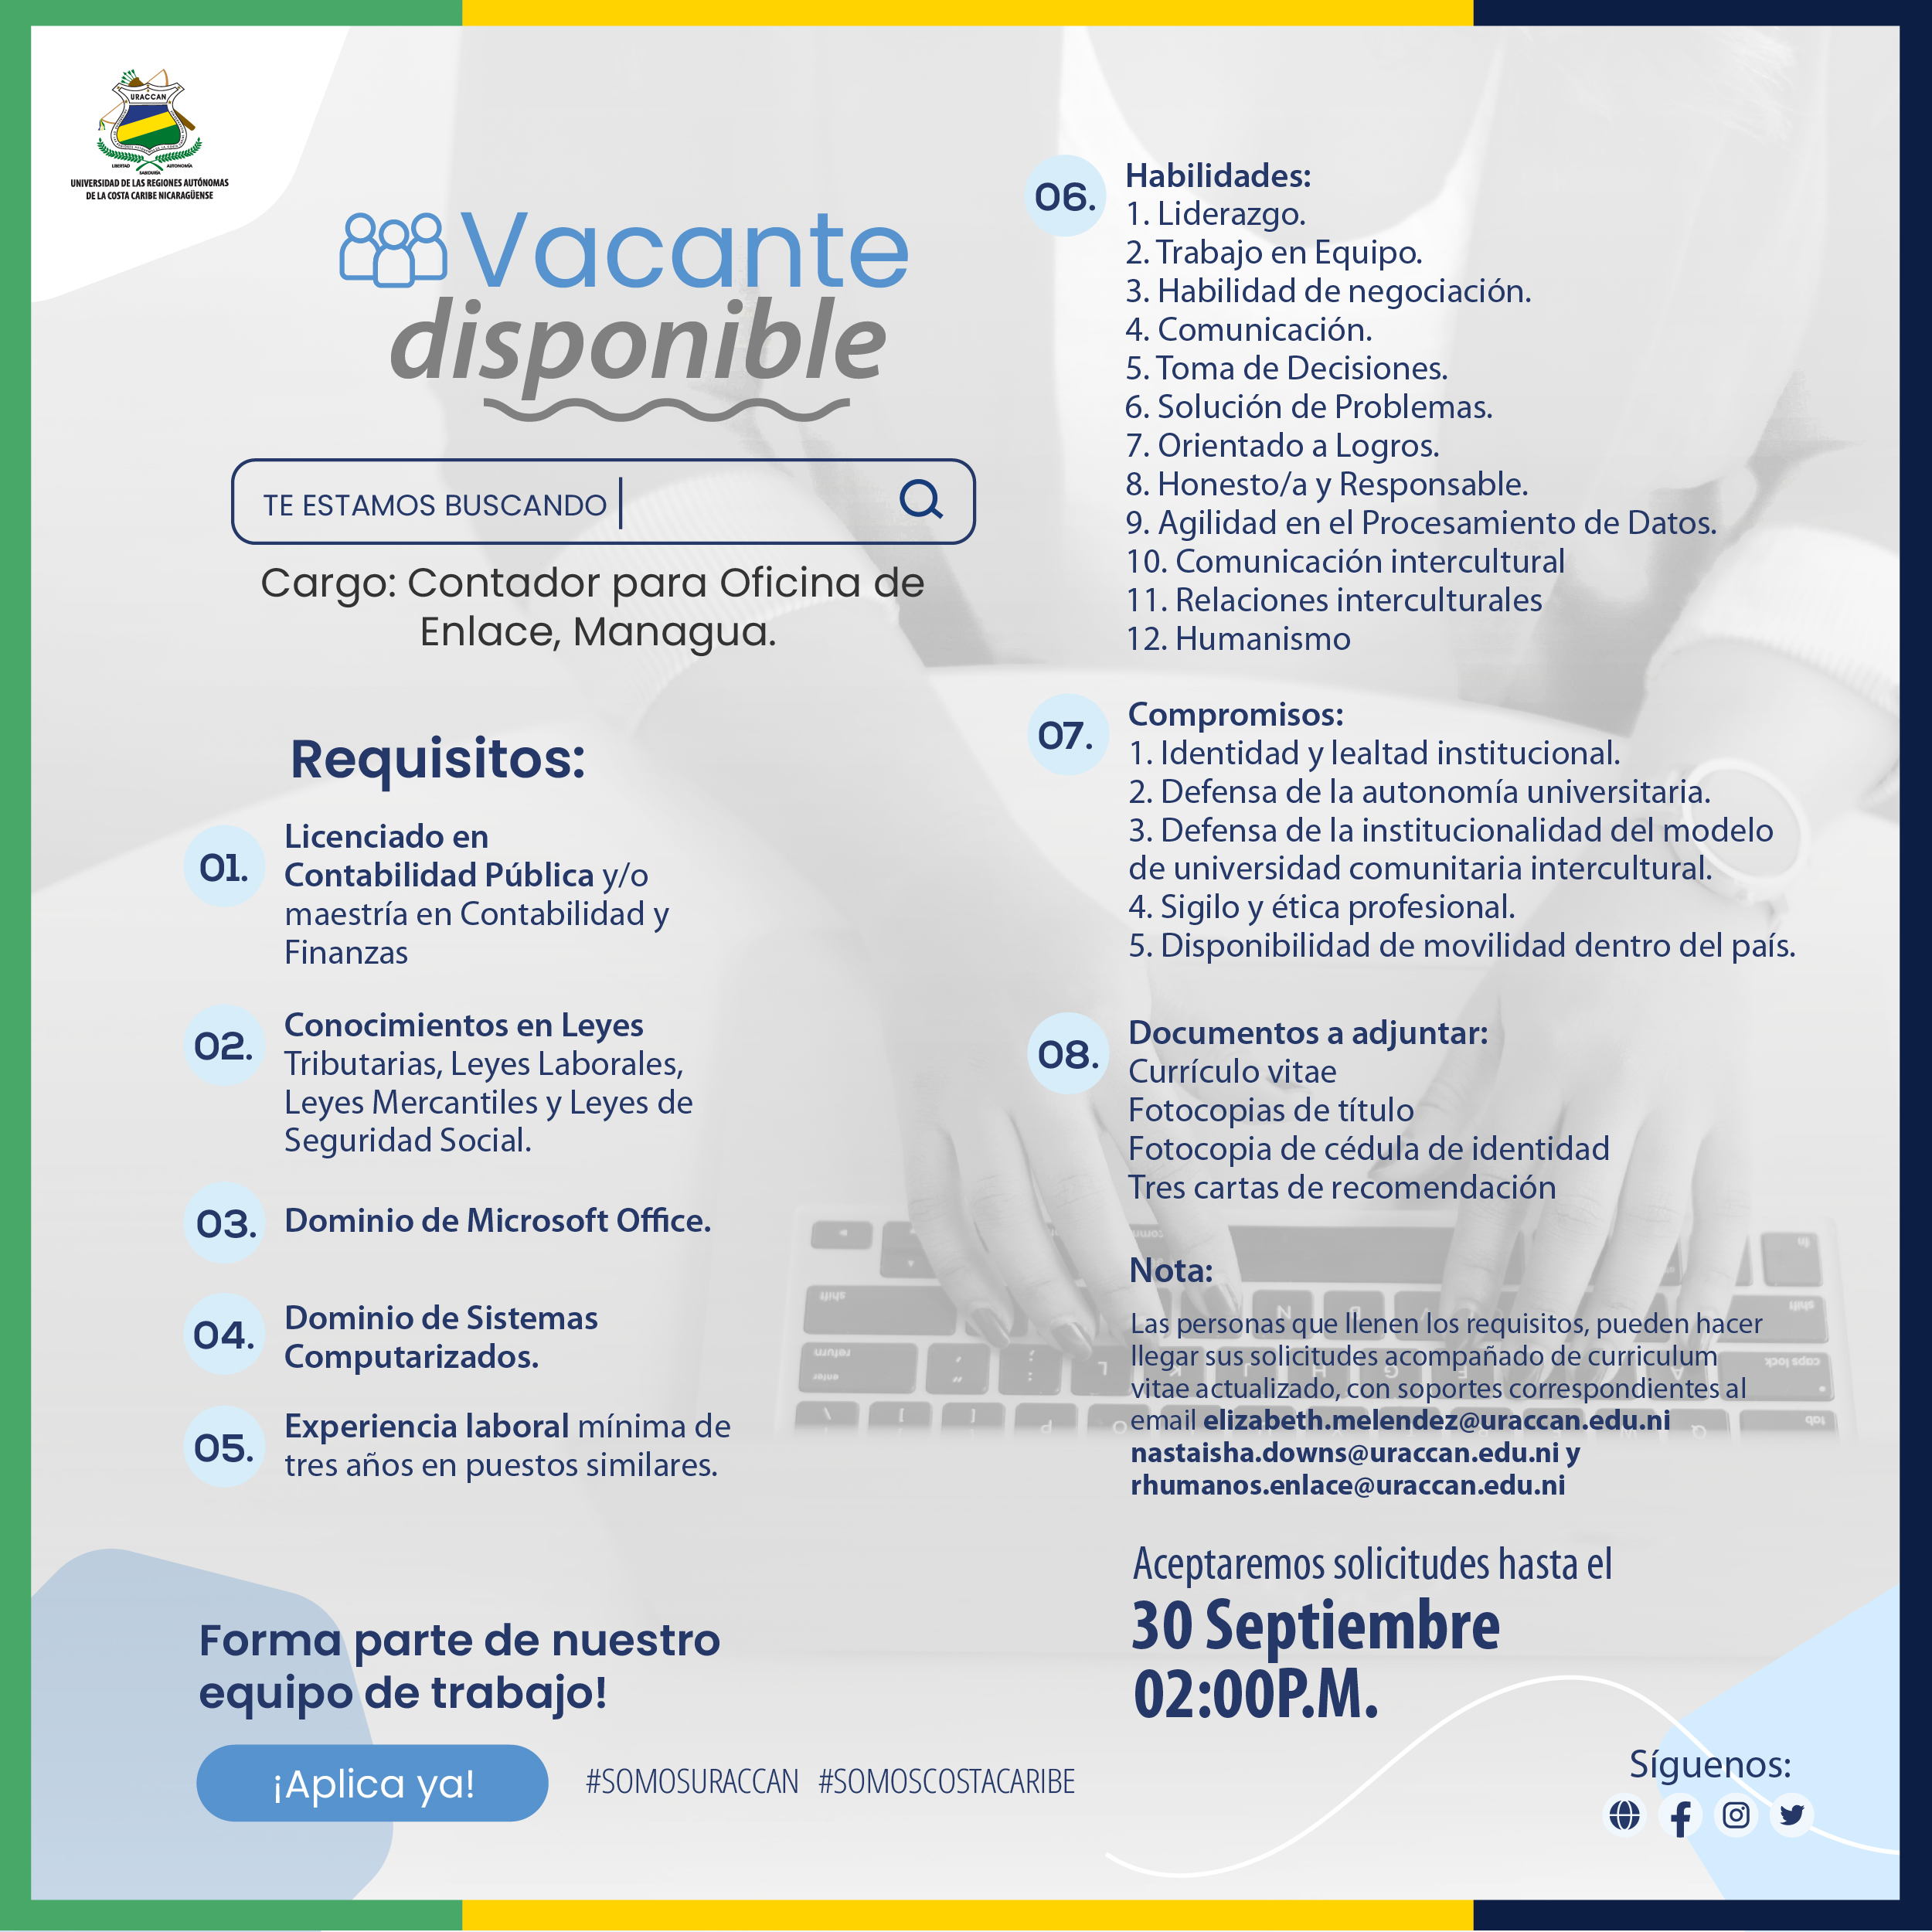 Licitación para el cargo denominado Contador para Oficina de Enlace, Managua